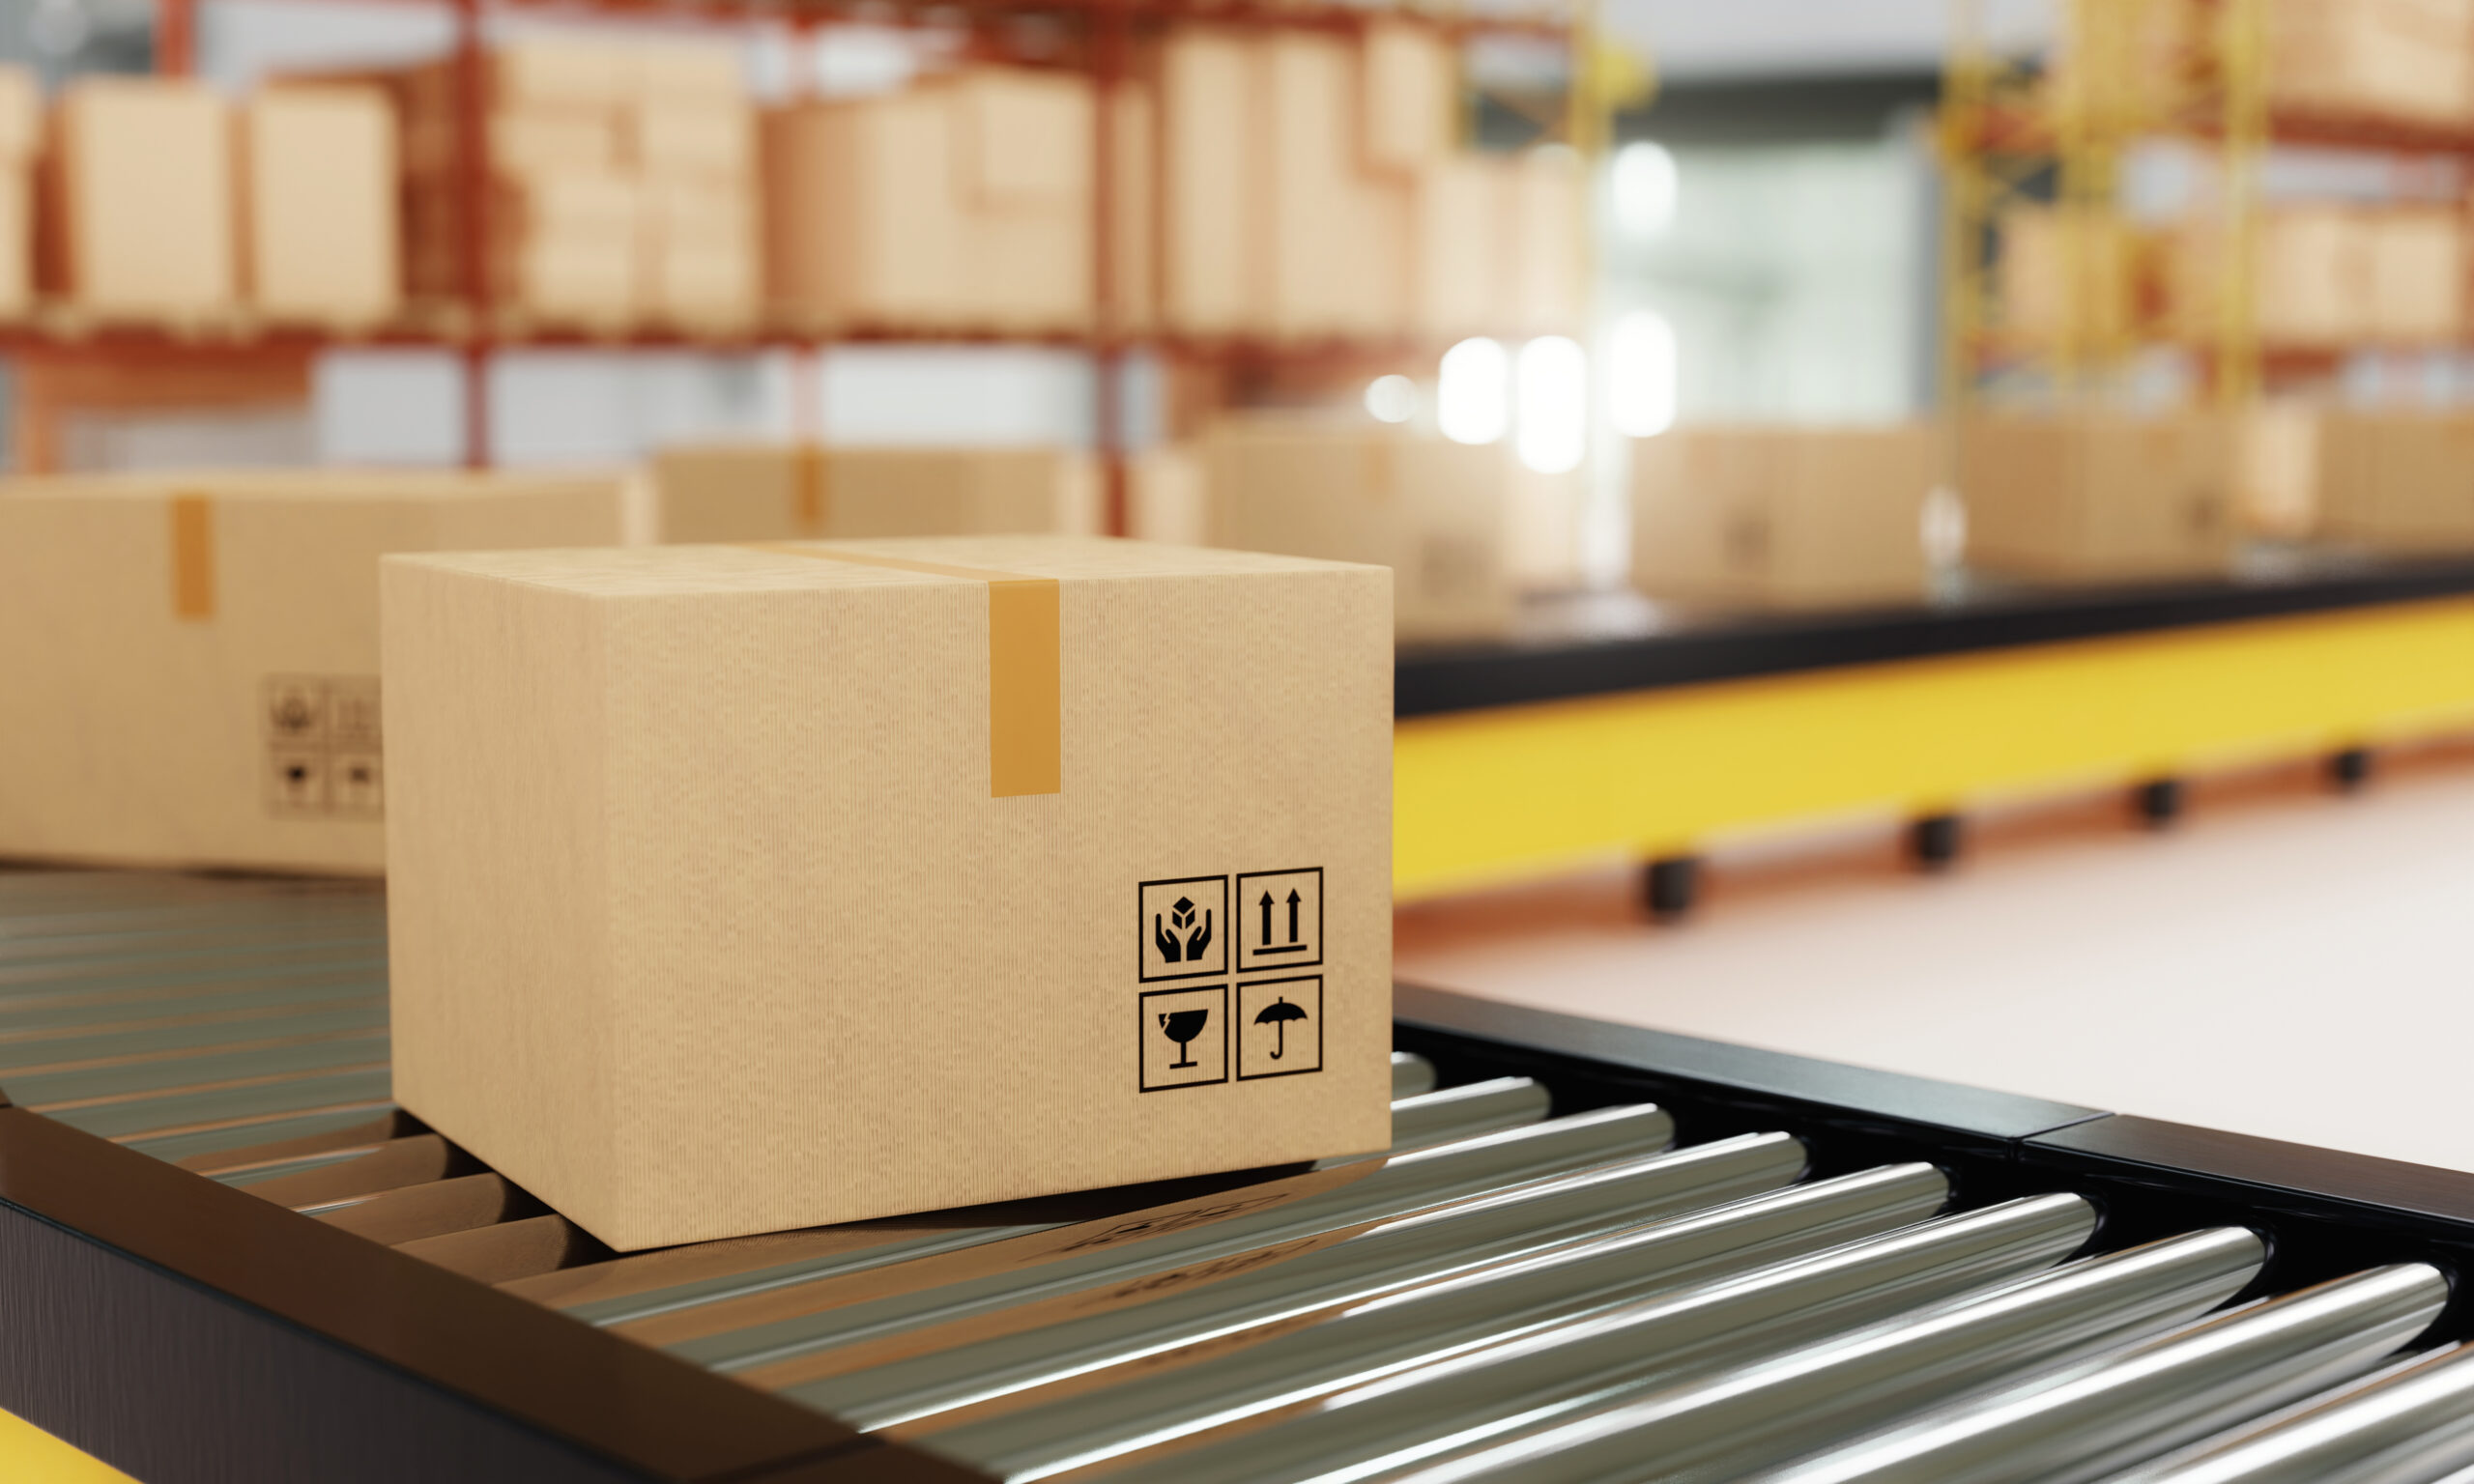 Logistics Packaging Market